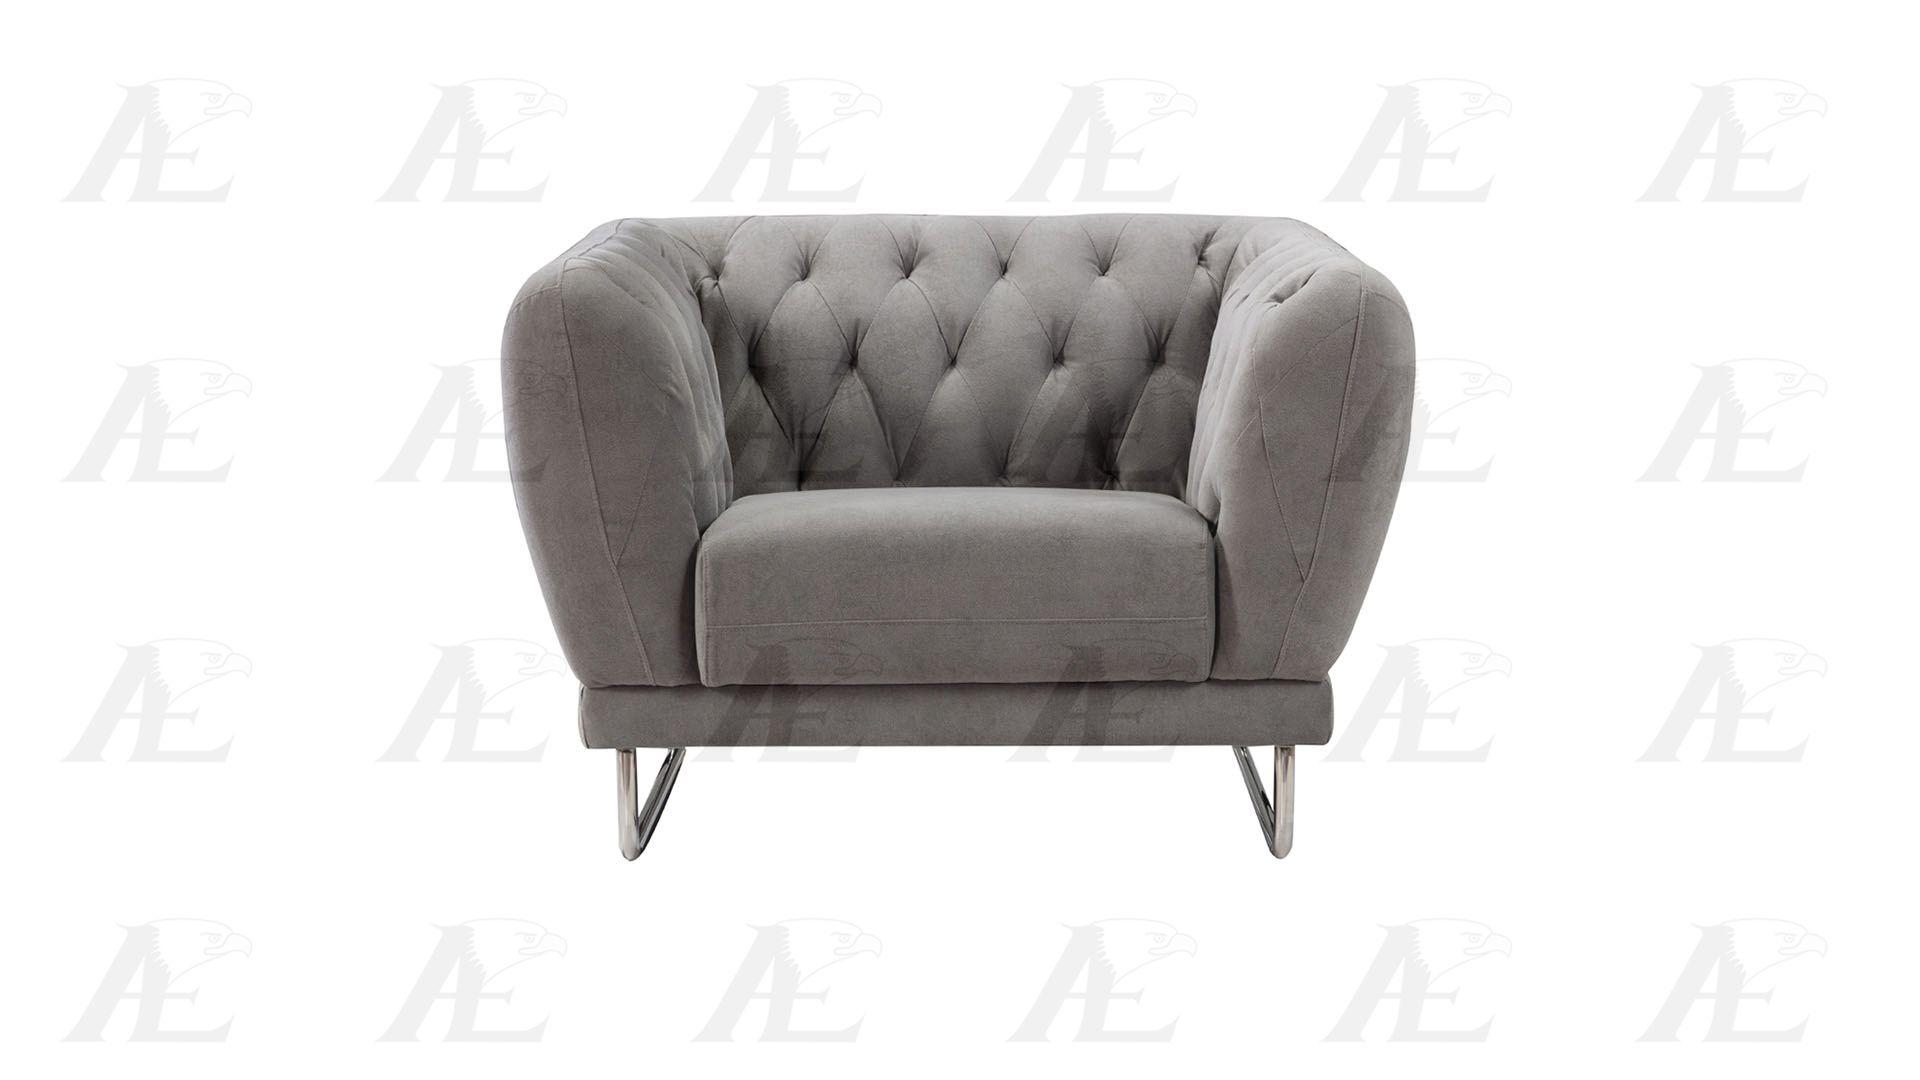 

    
AE-2368 American Eagle Furniture Sofa Set
